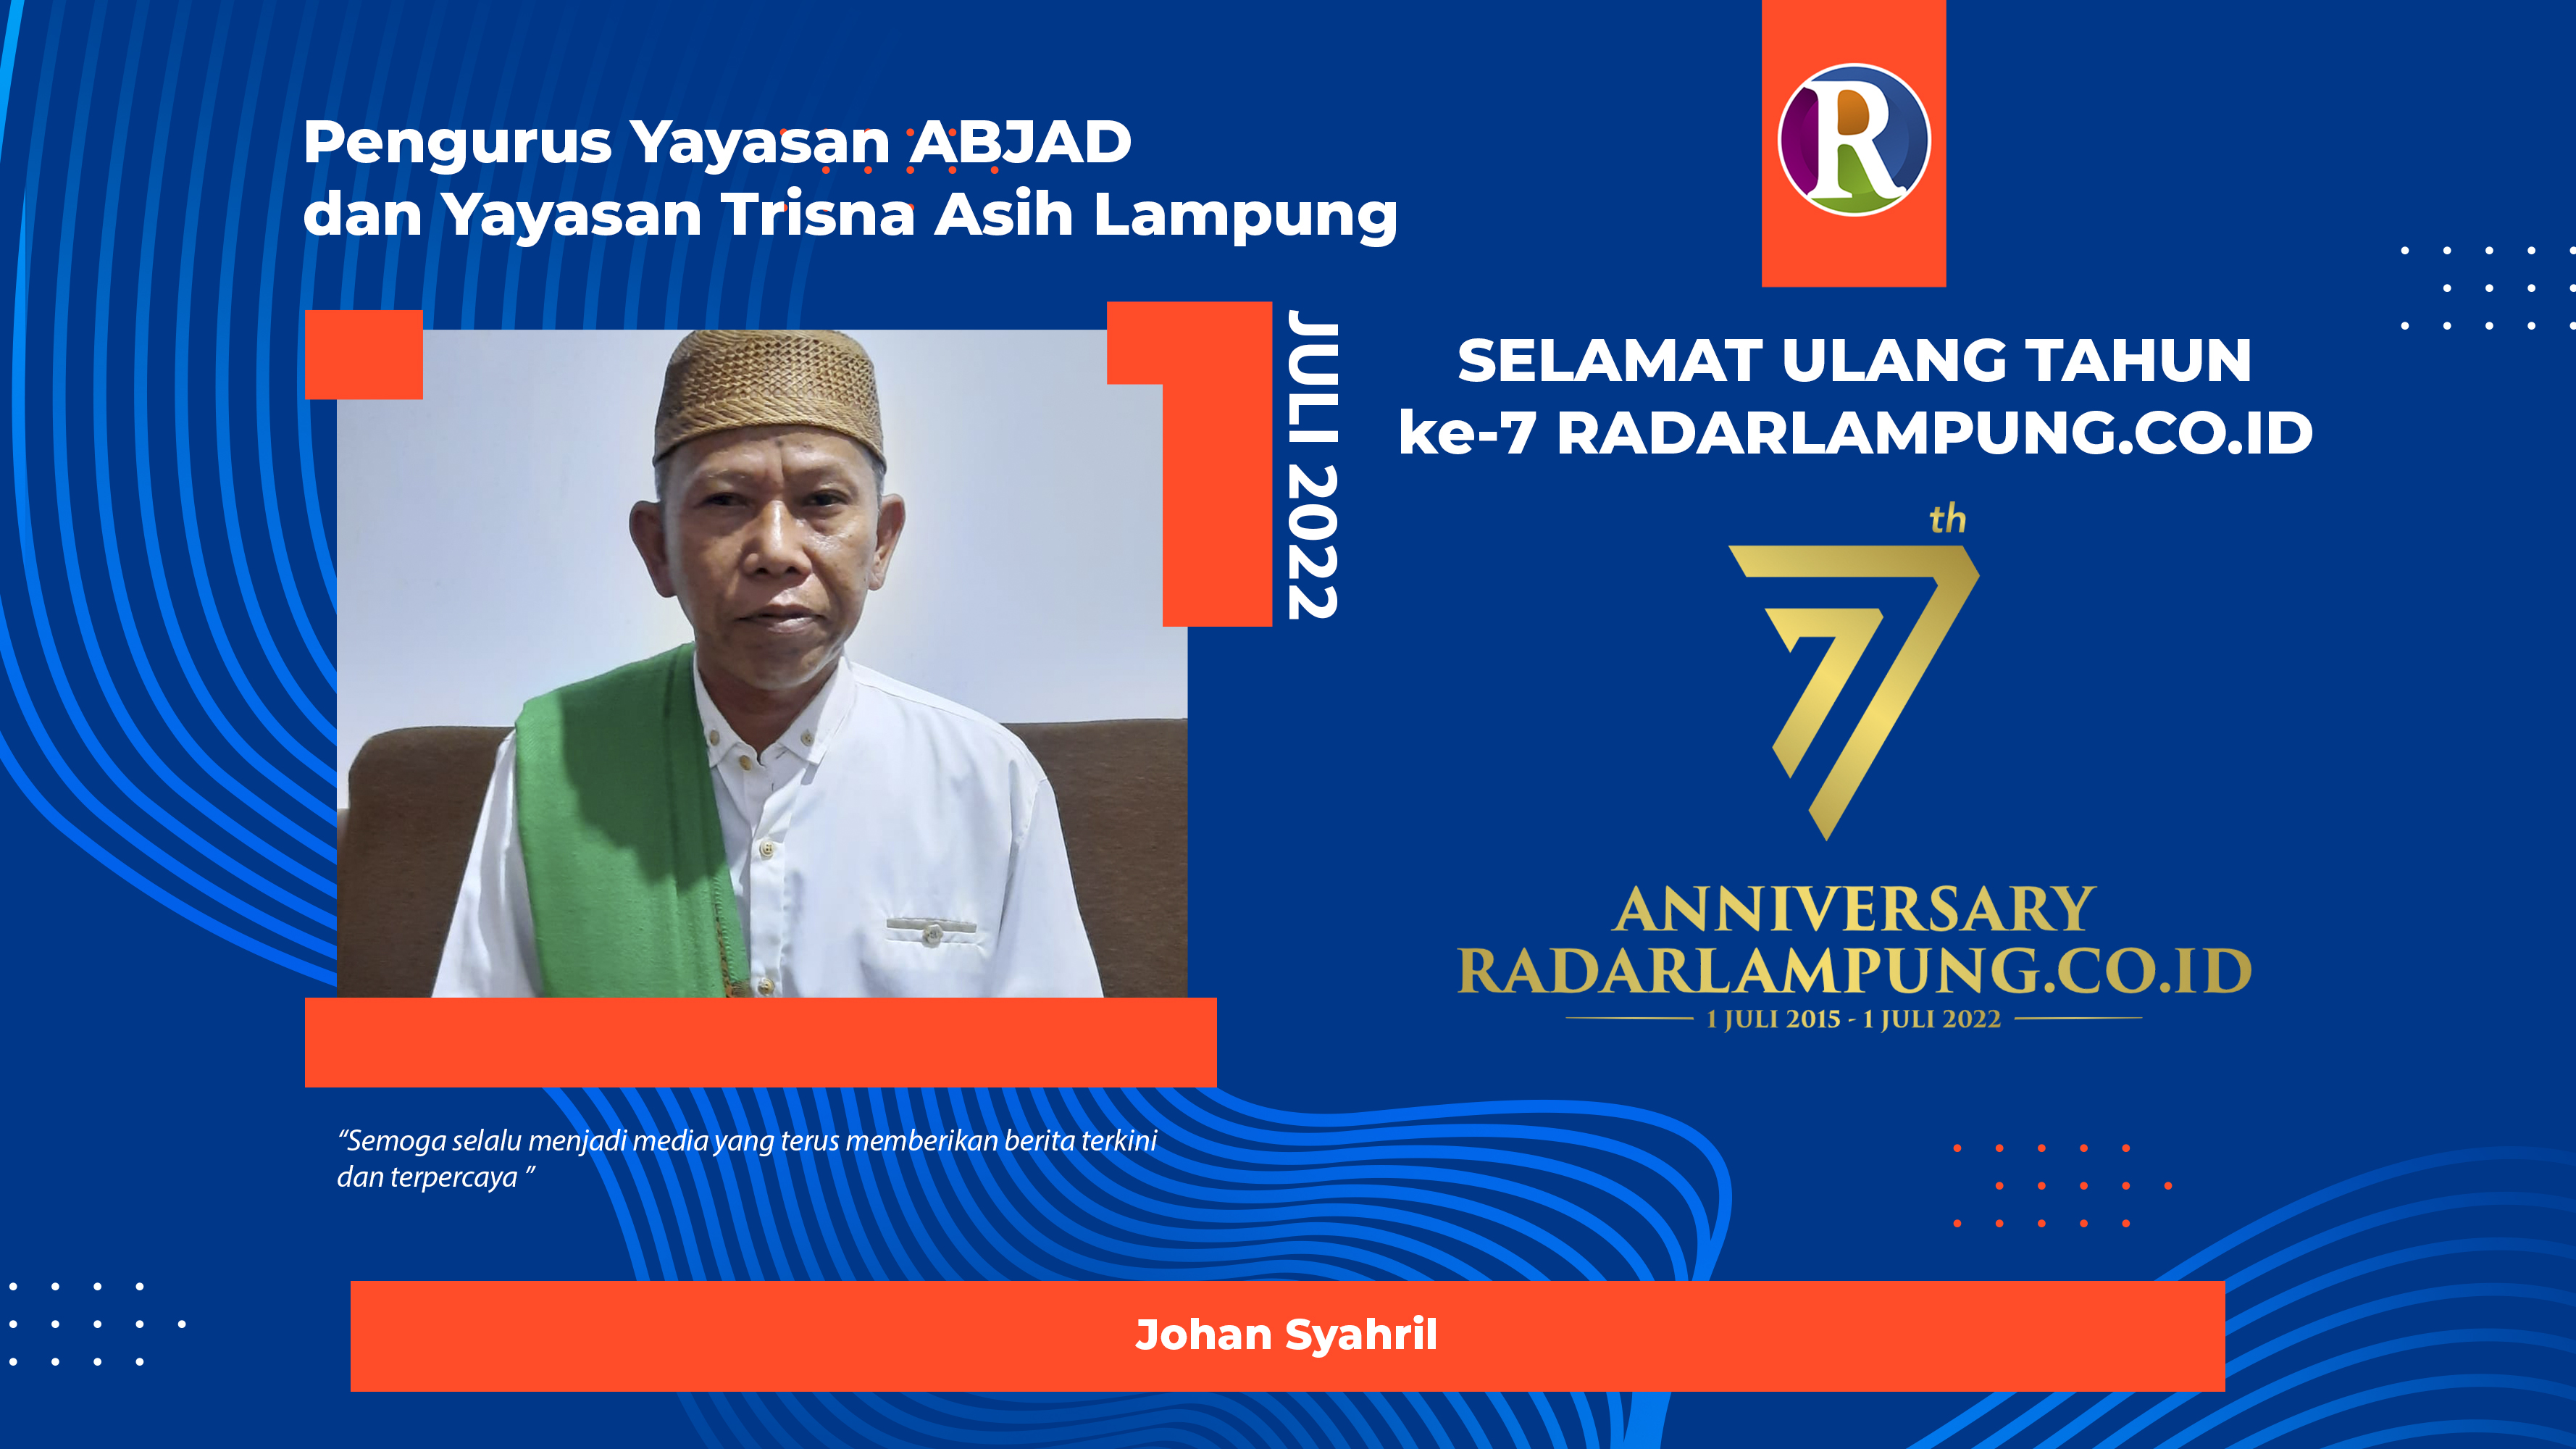 Yayasan ABJAD dan Trisna Asih Lampung: Selamat Ulang Tahun ke-7 Radarlampung.co.id